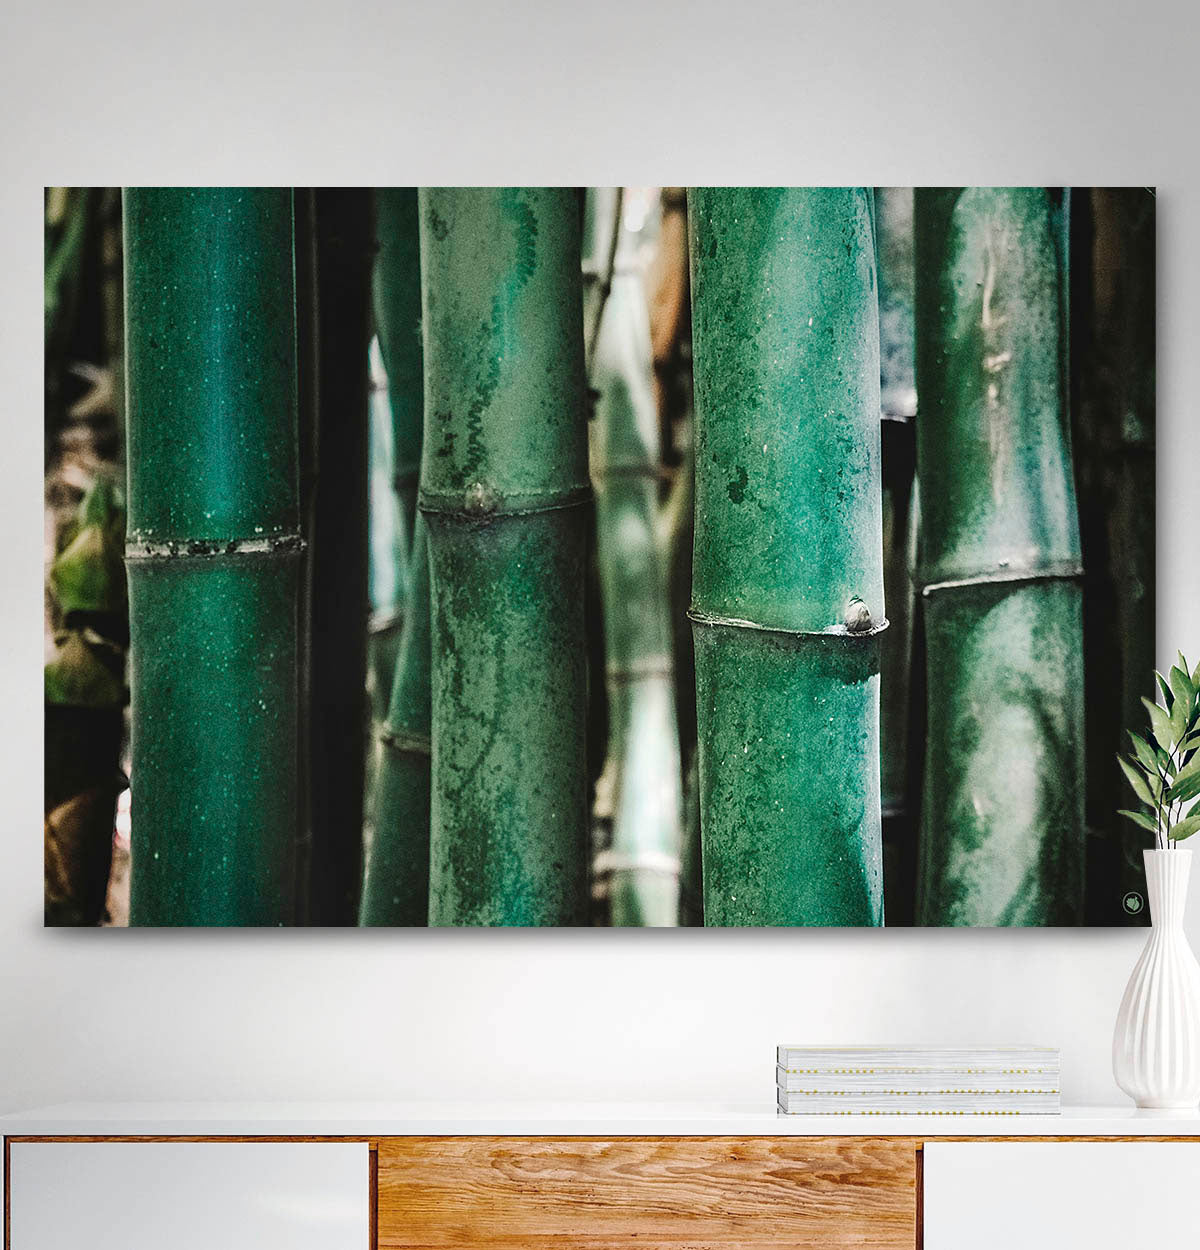 Vierkante wanddecoratie met bamboe erop.